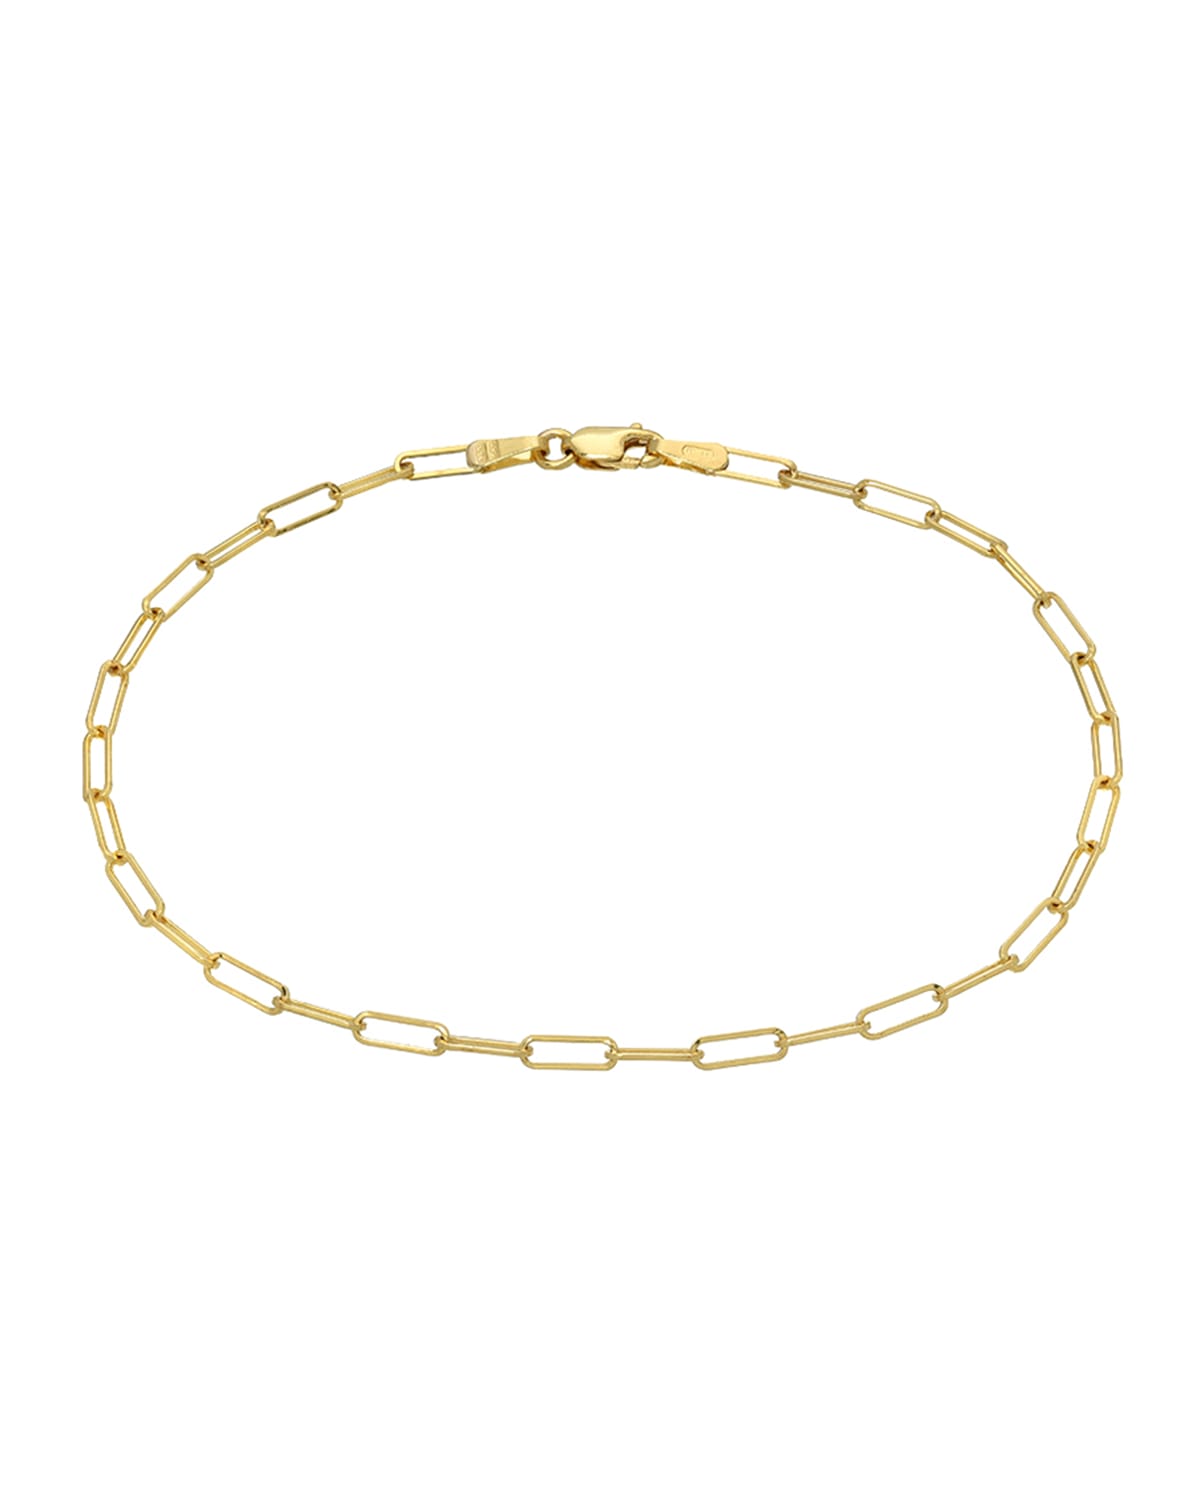 Zoe Lev Jewelry 14k Gold Open Link Bracelet